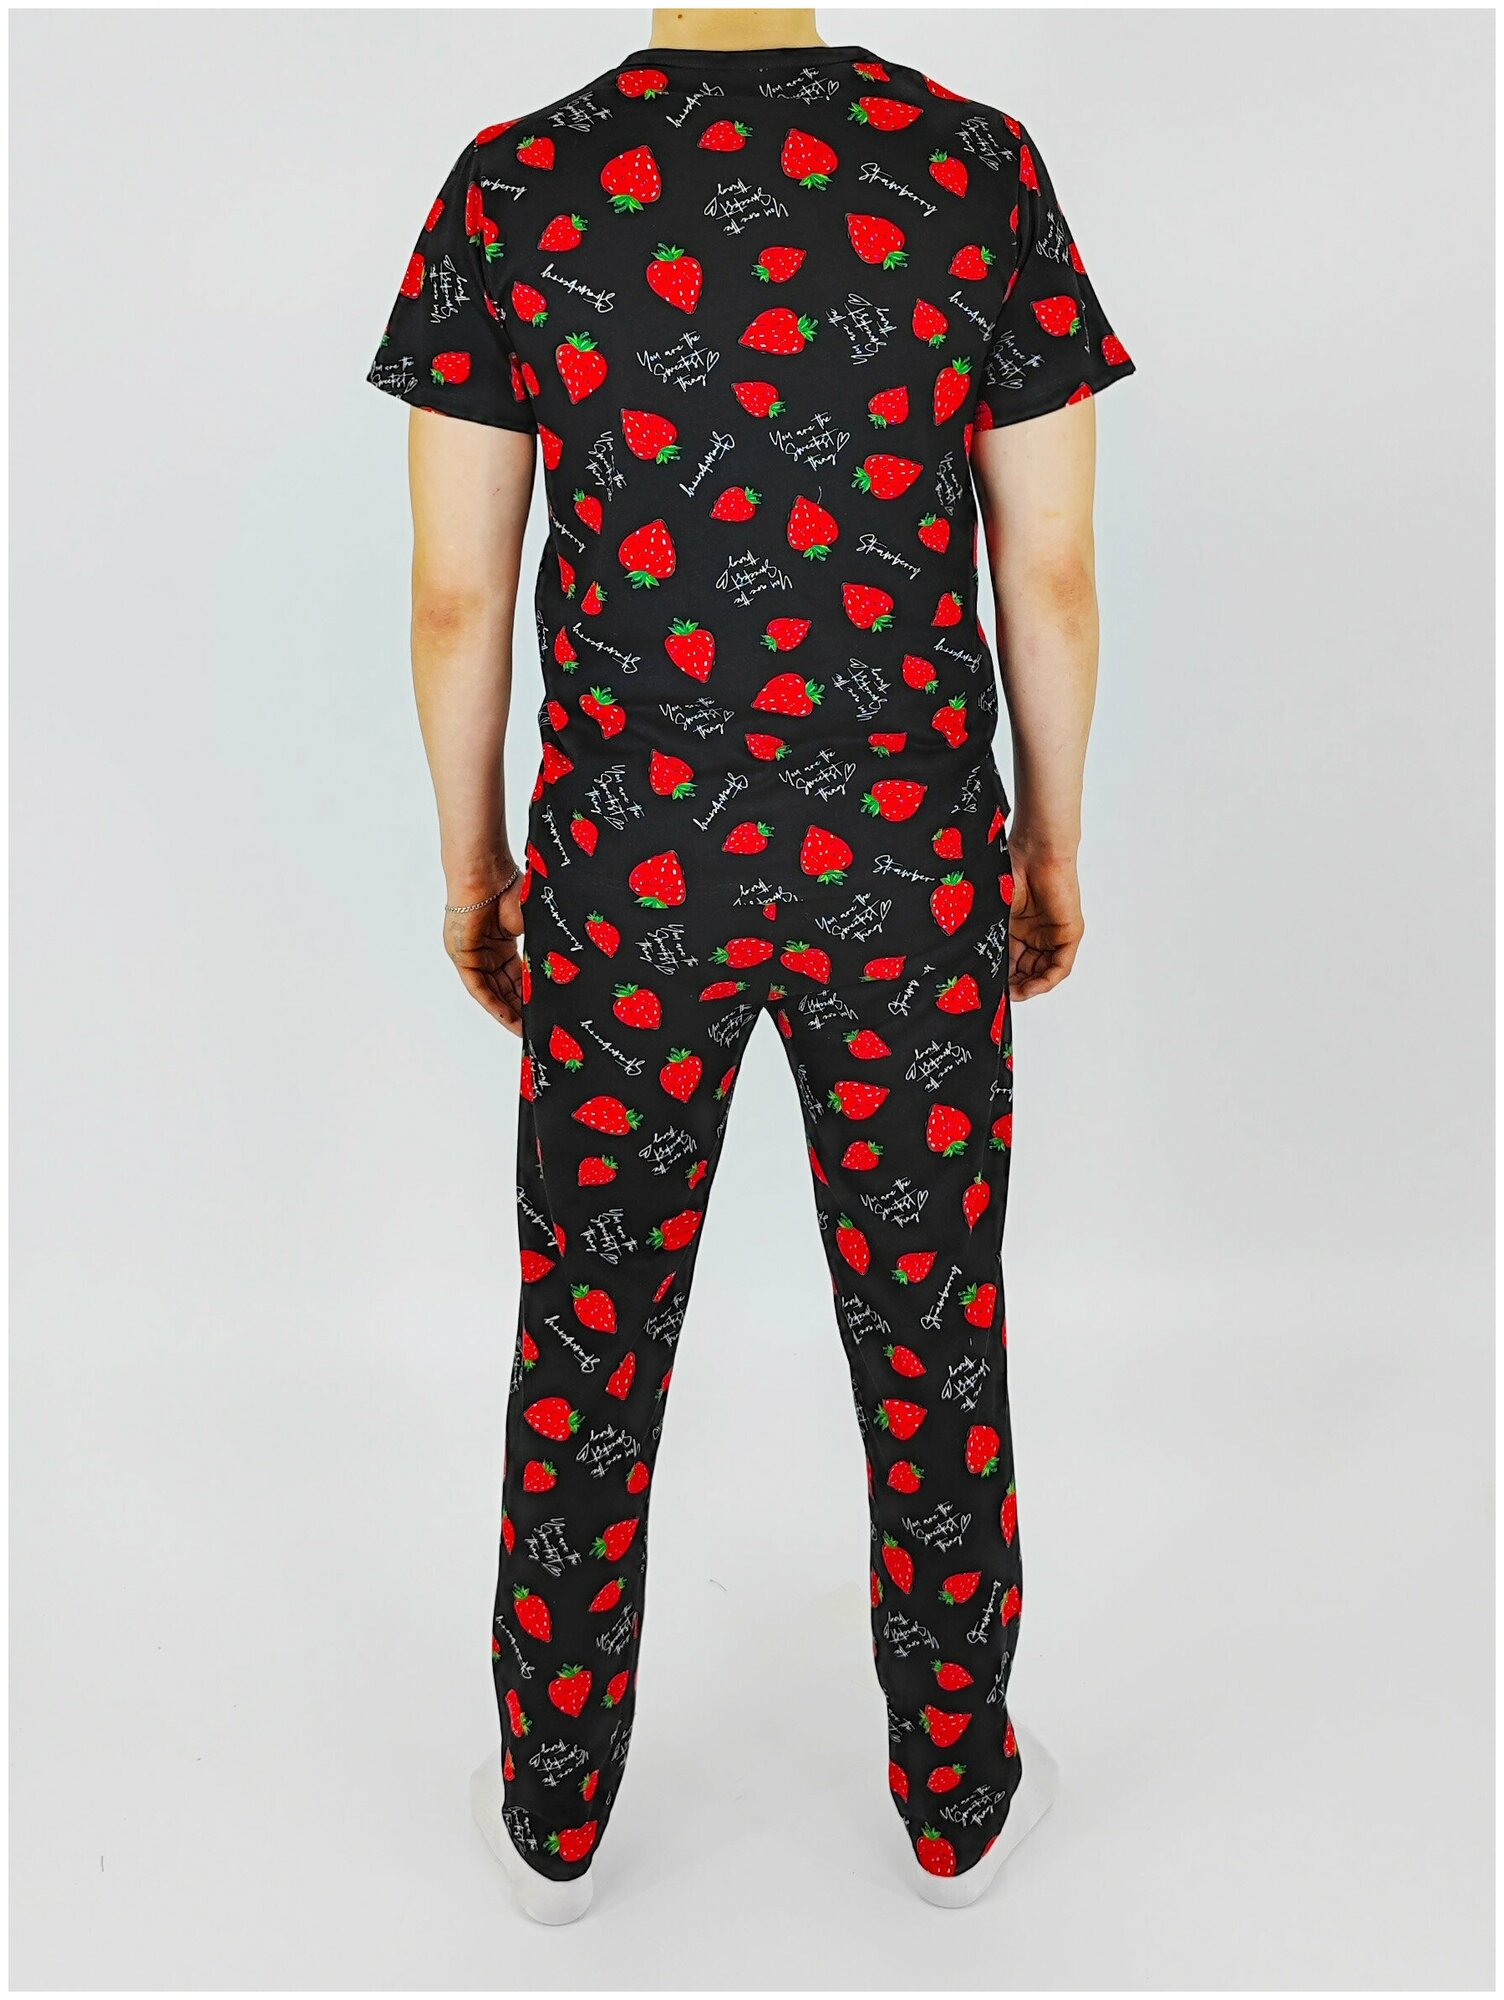 Мужская пижама, мужской пижамный комплект ARISTARHOV, Футболка + Брюки, Клубничка, черный алый, размер 44 - фотография № 7